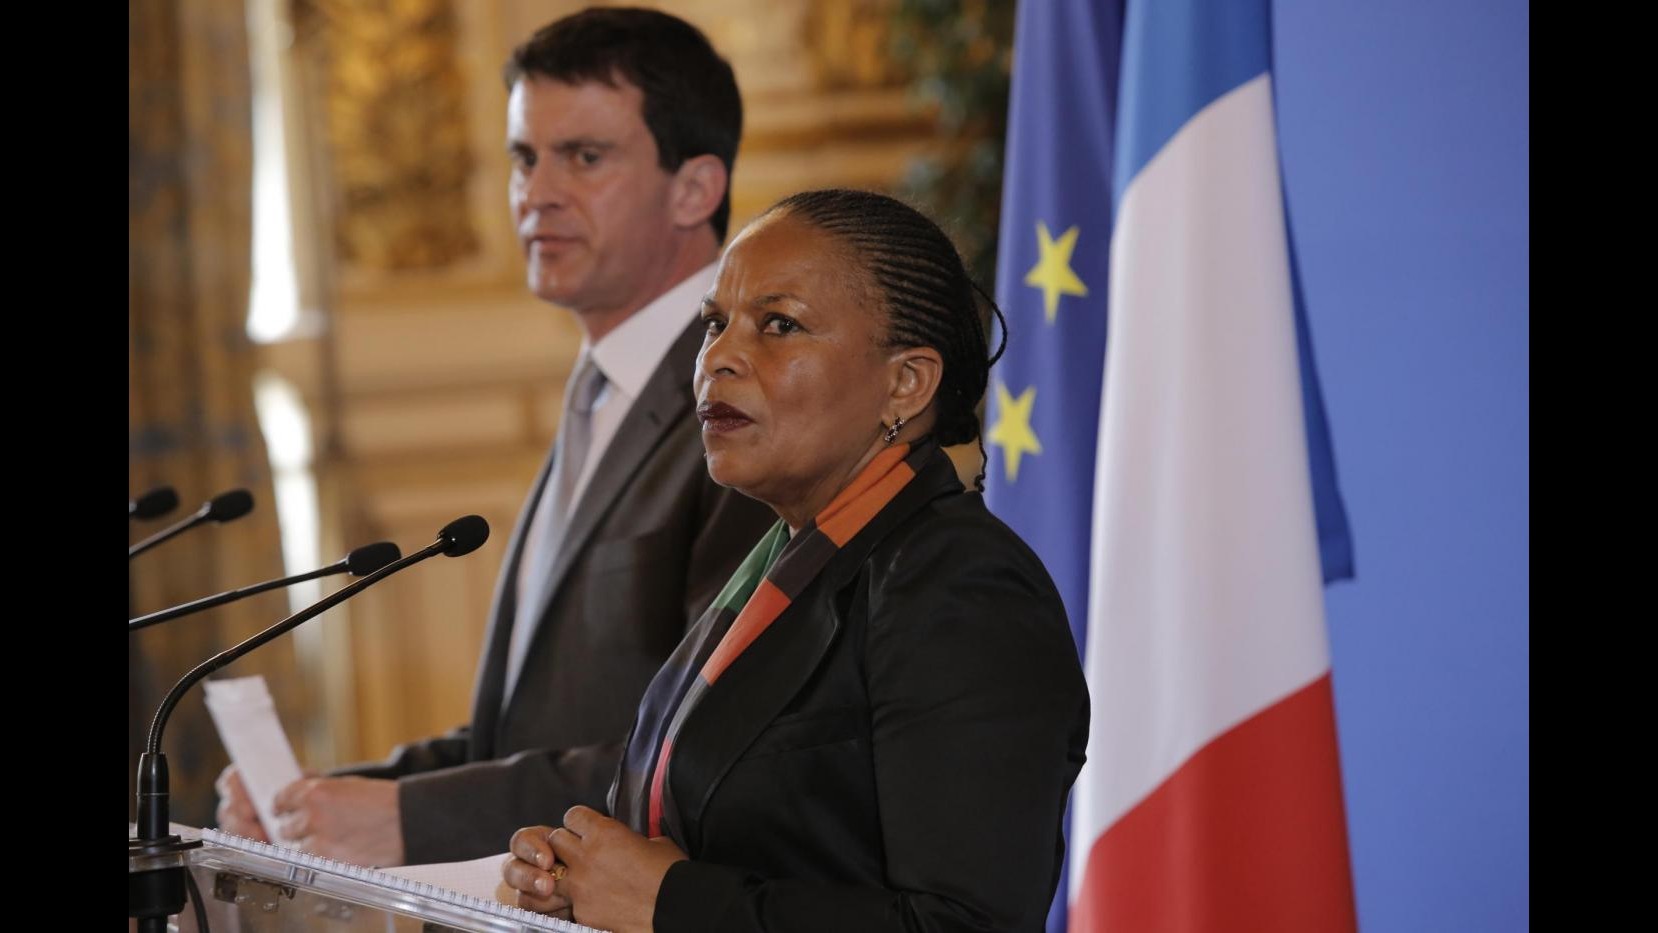 Francia, Fronte nazionale querelerà per diffamazione ministra Taubira